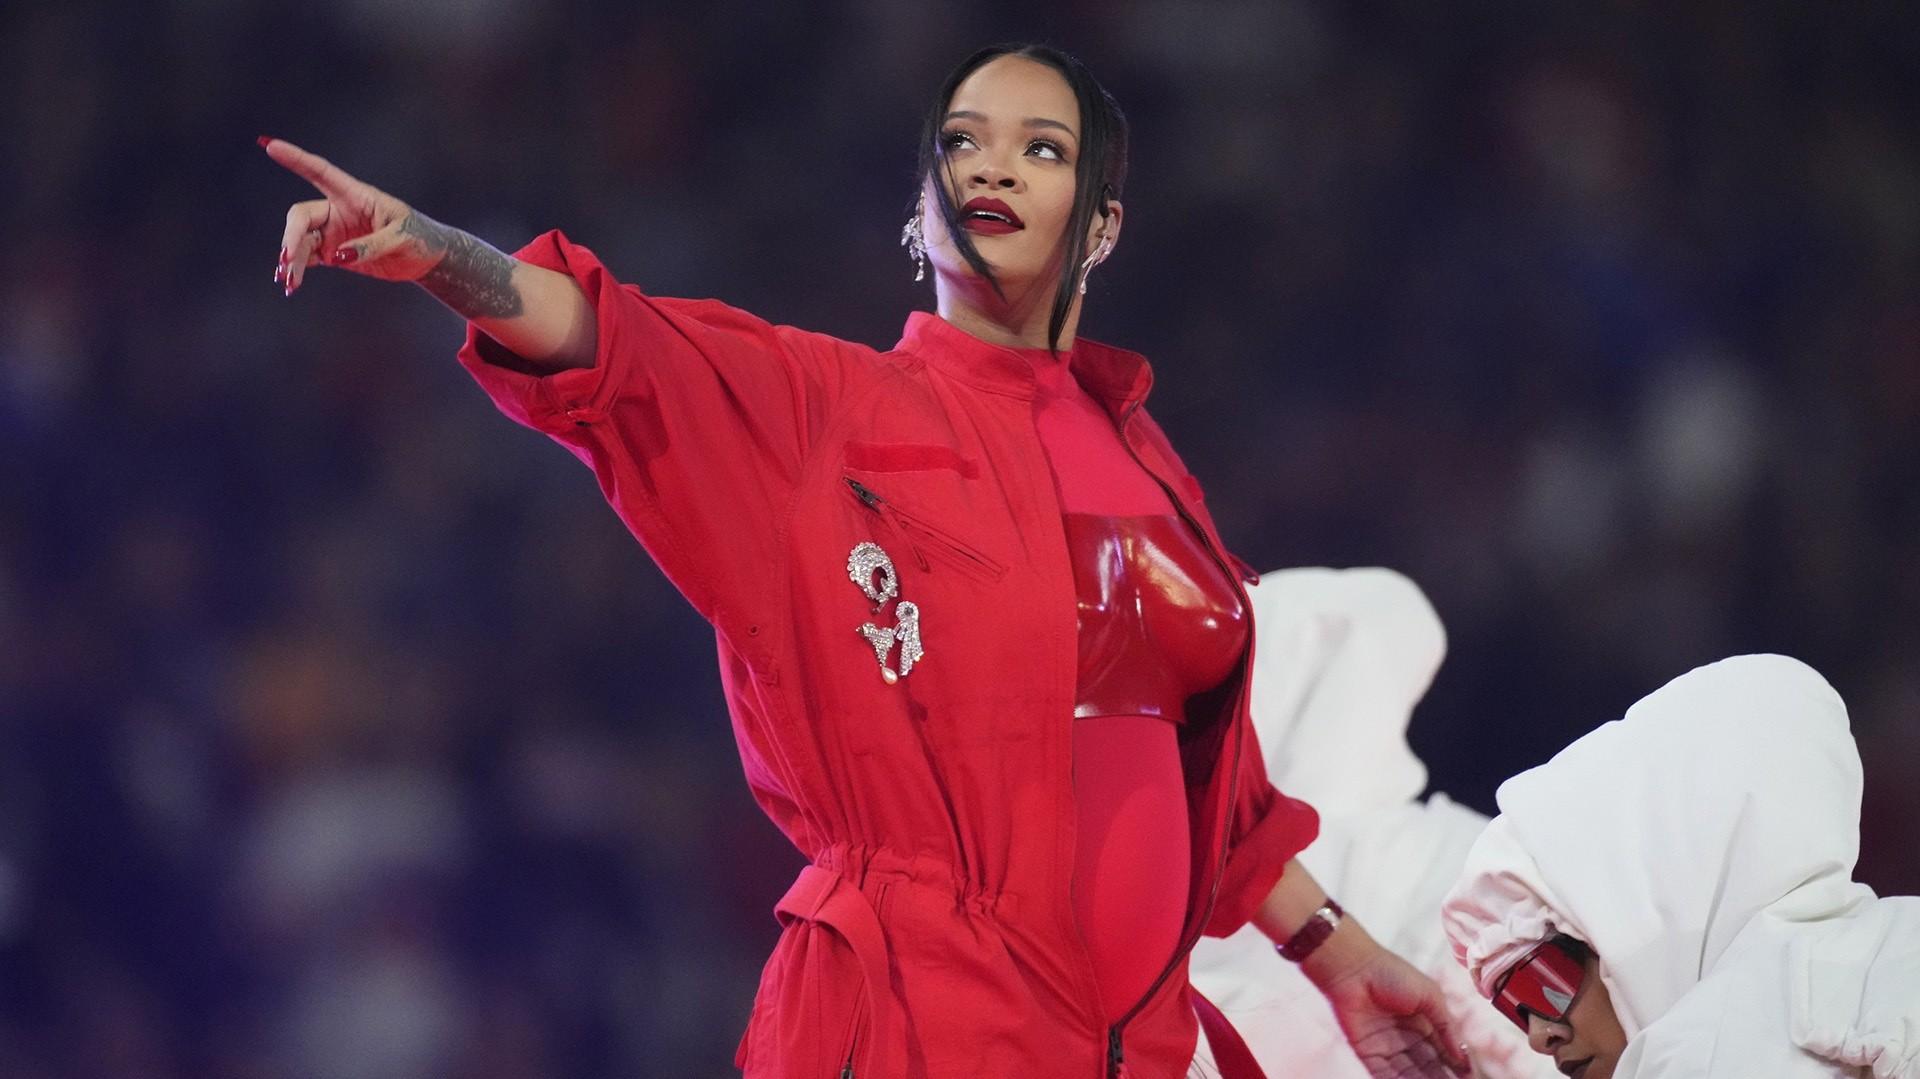 Rihanna reveals baby bump during Super Bowl halftime show